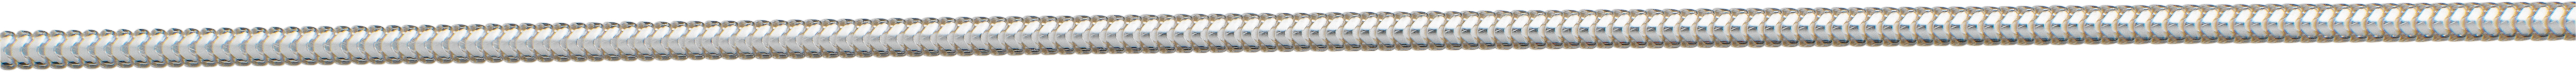 slangenketting zilver 925/- Ø 1,30mm